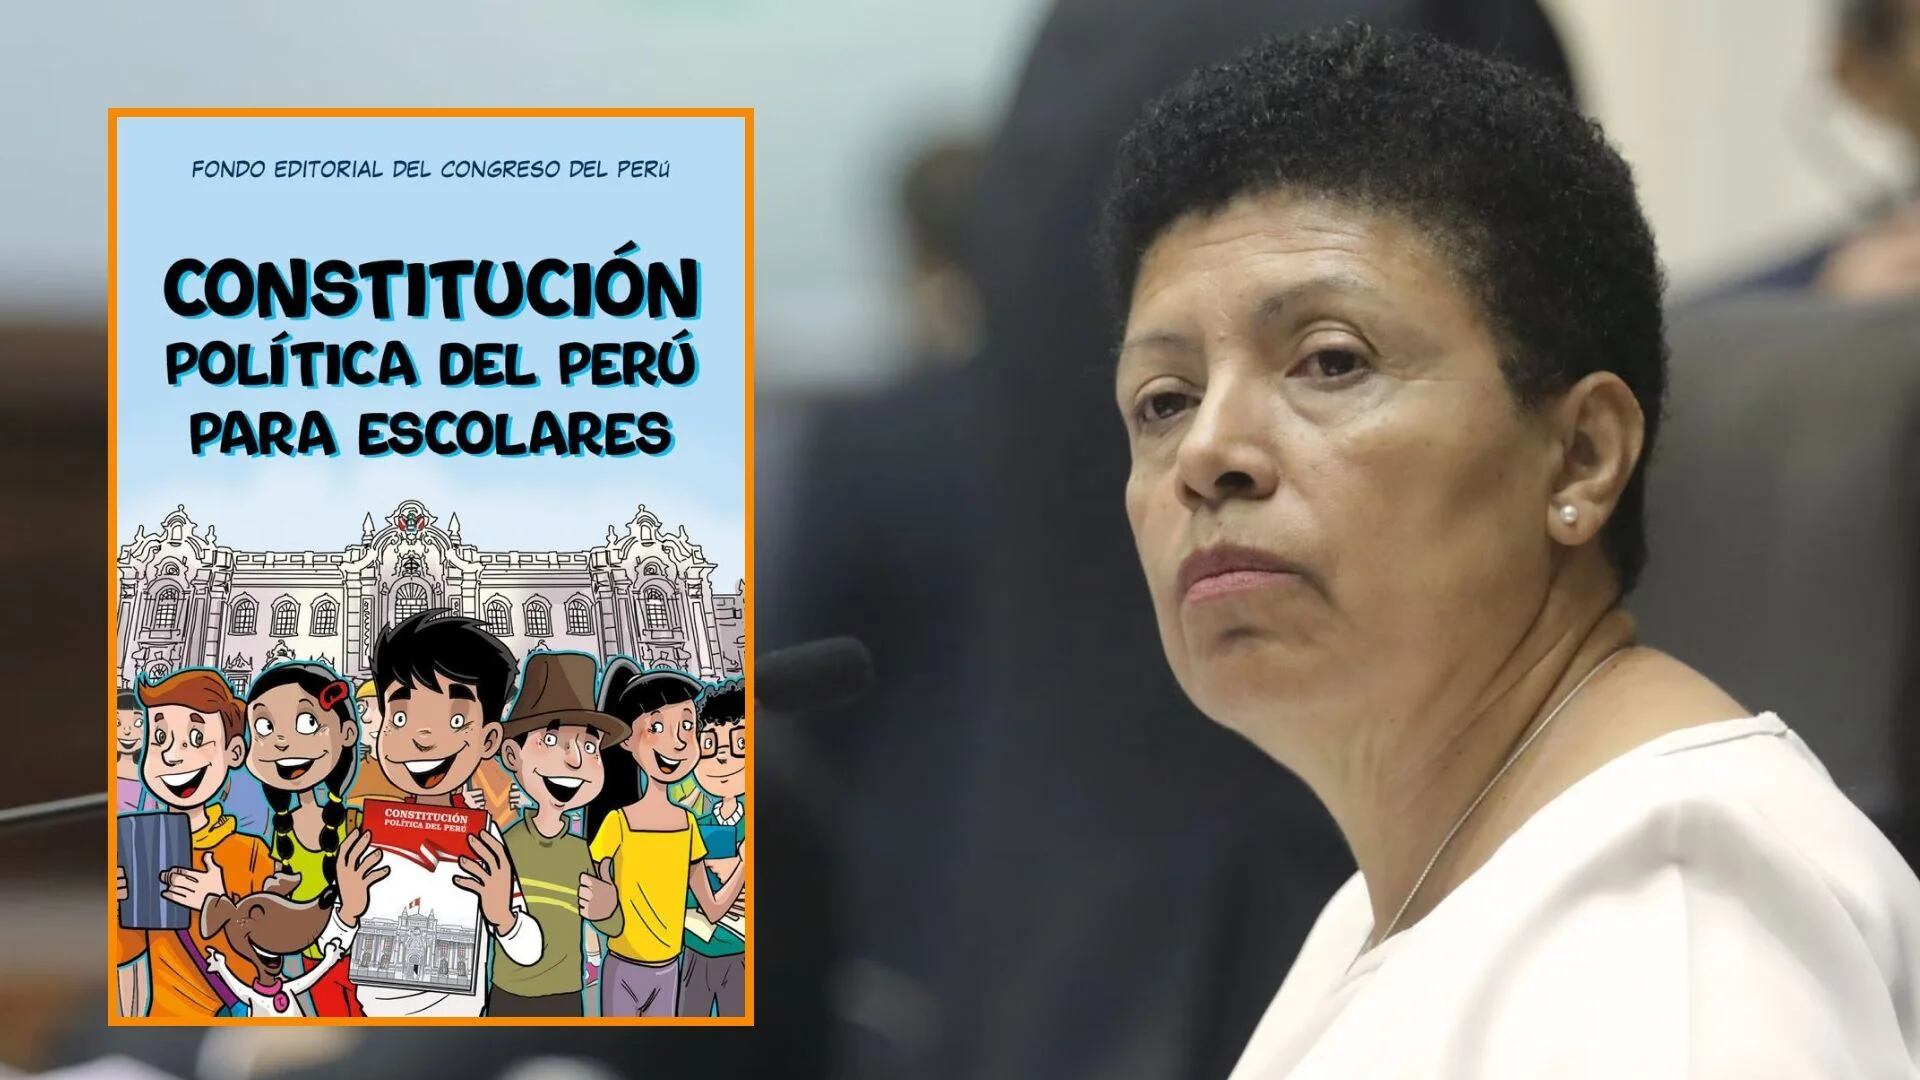 Congreso gastó más de 24 mil soles en constitución política del Perú para escolares | Infobae Perú / Camila Calderón